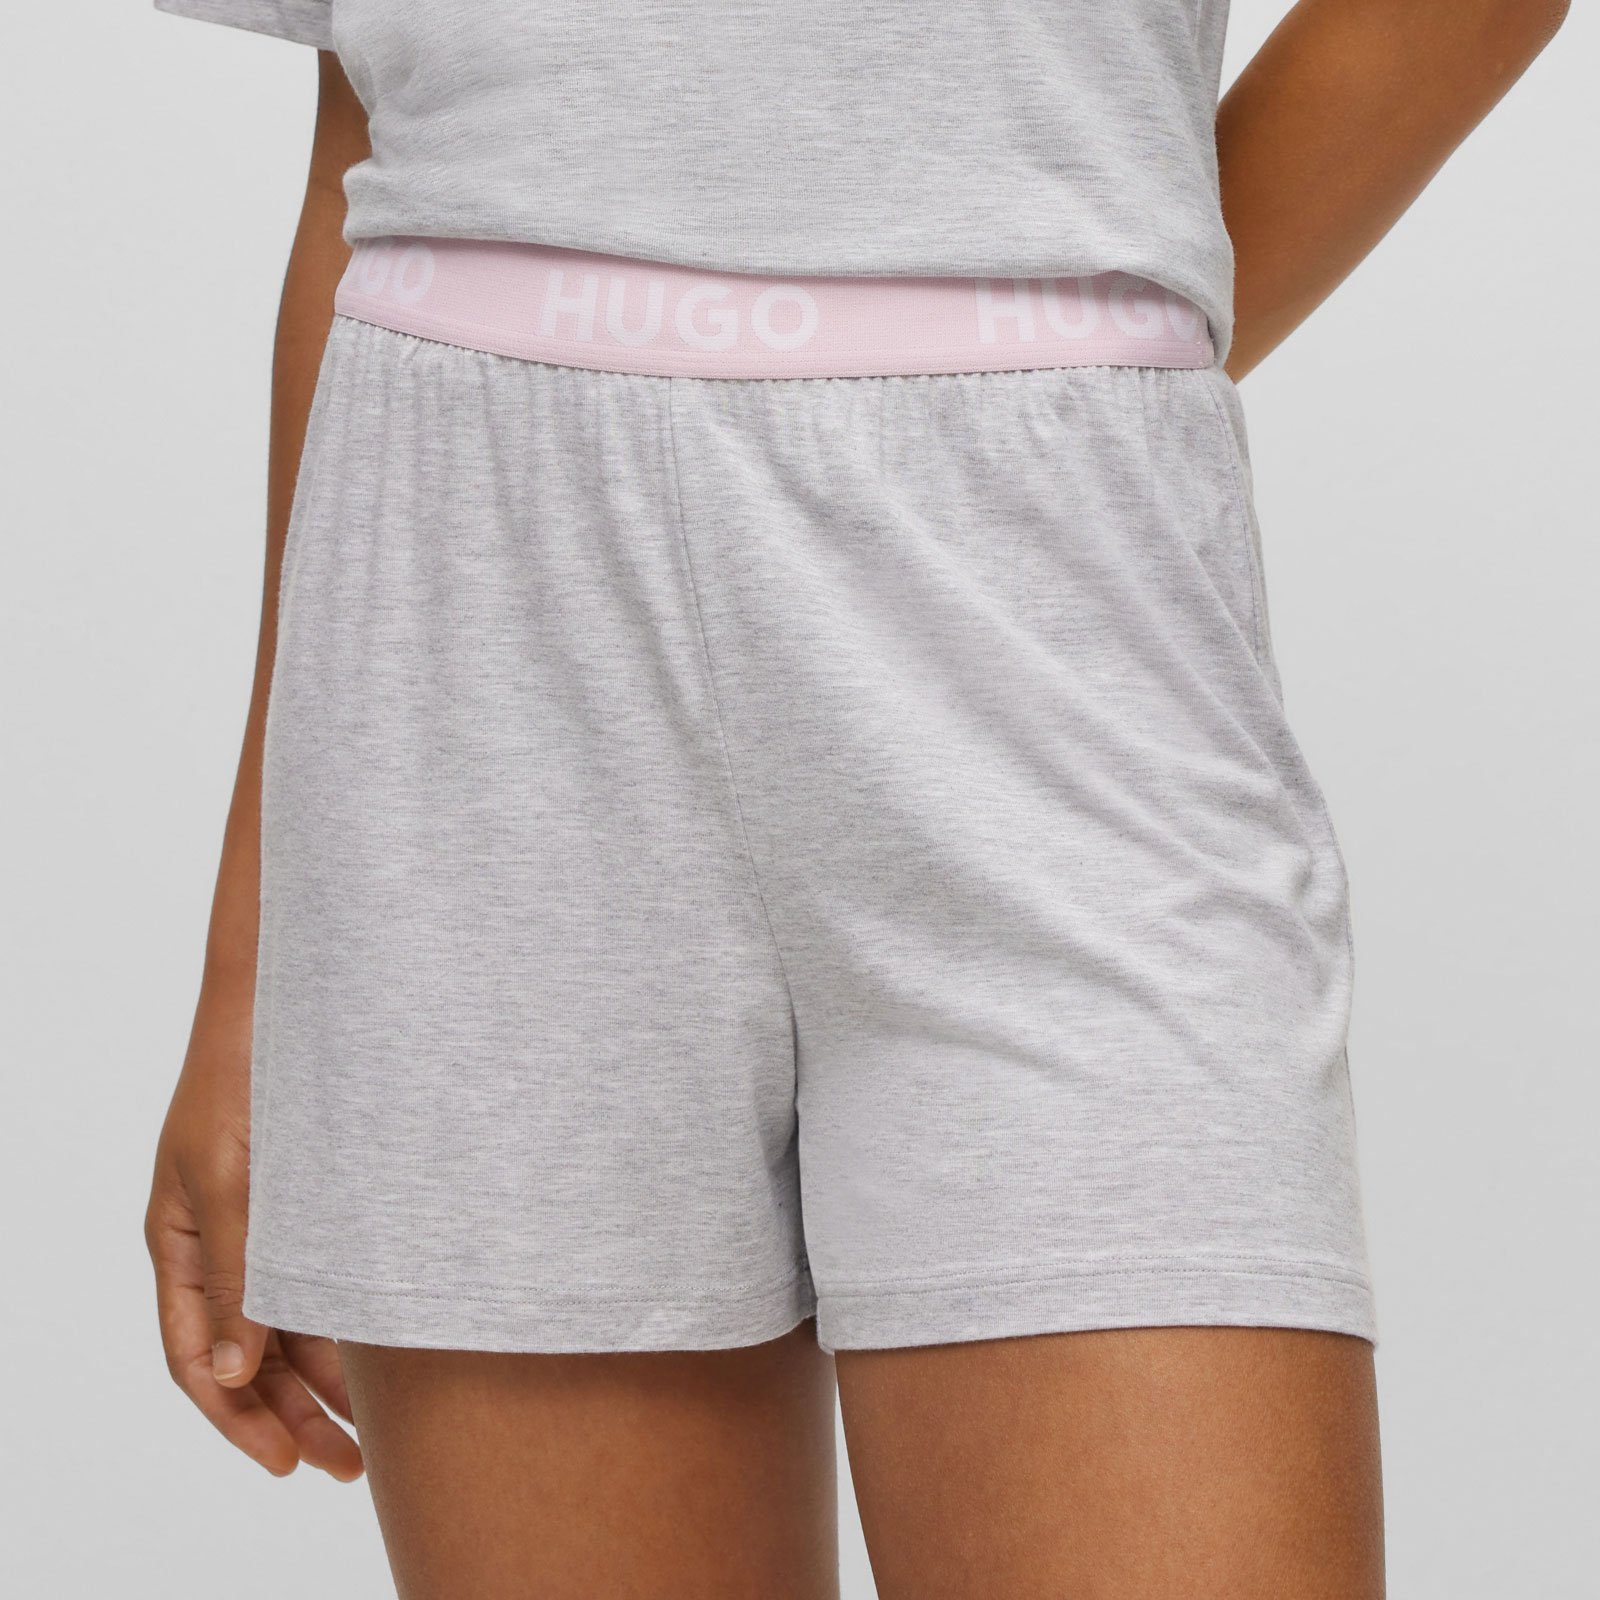 Unite Marken-Logos mit HUGO Shorts sichtbarem Pyjamashorts mit Bund